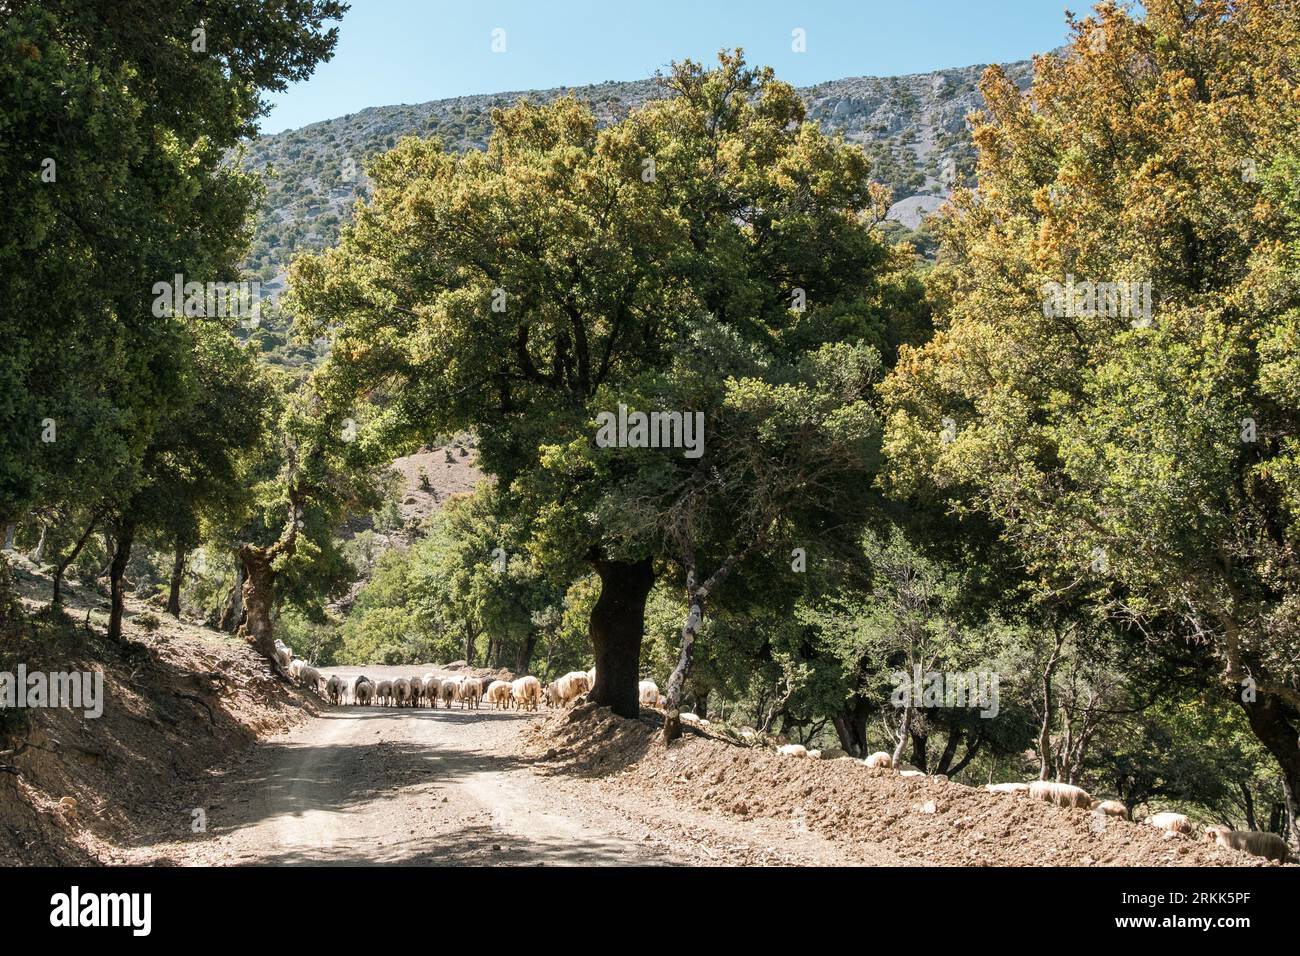 Haut dans les montagnes Psiloritis de Crète, un troupeau de moutons traverse une route menant aux gorges de Rouvas Banque D'Images